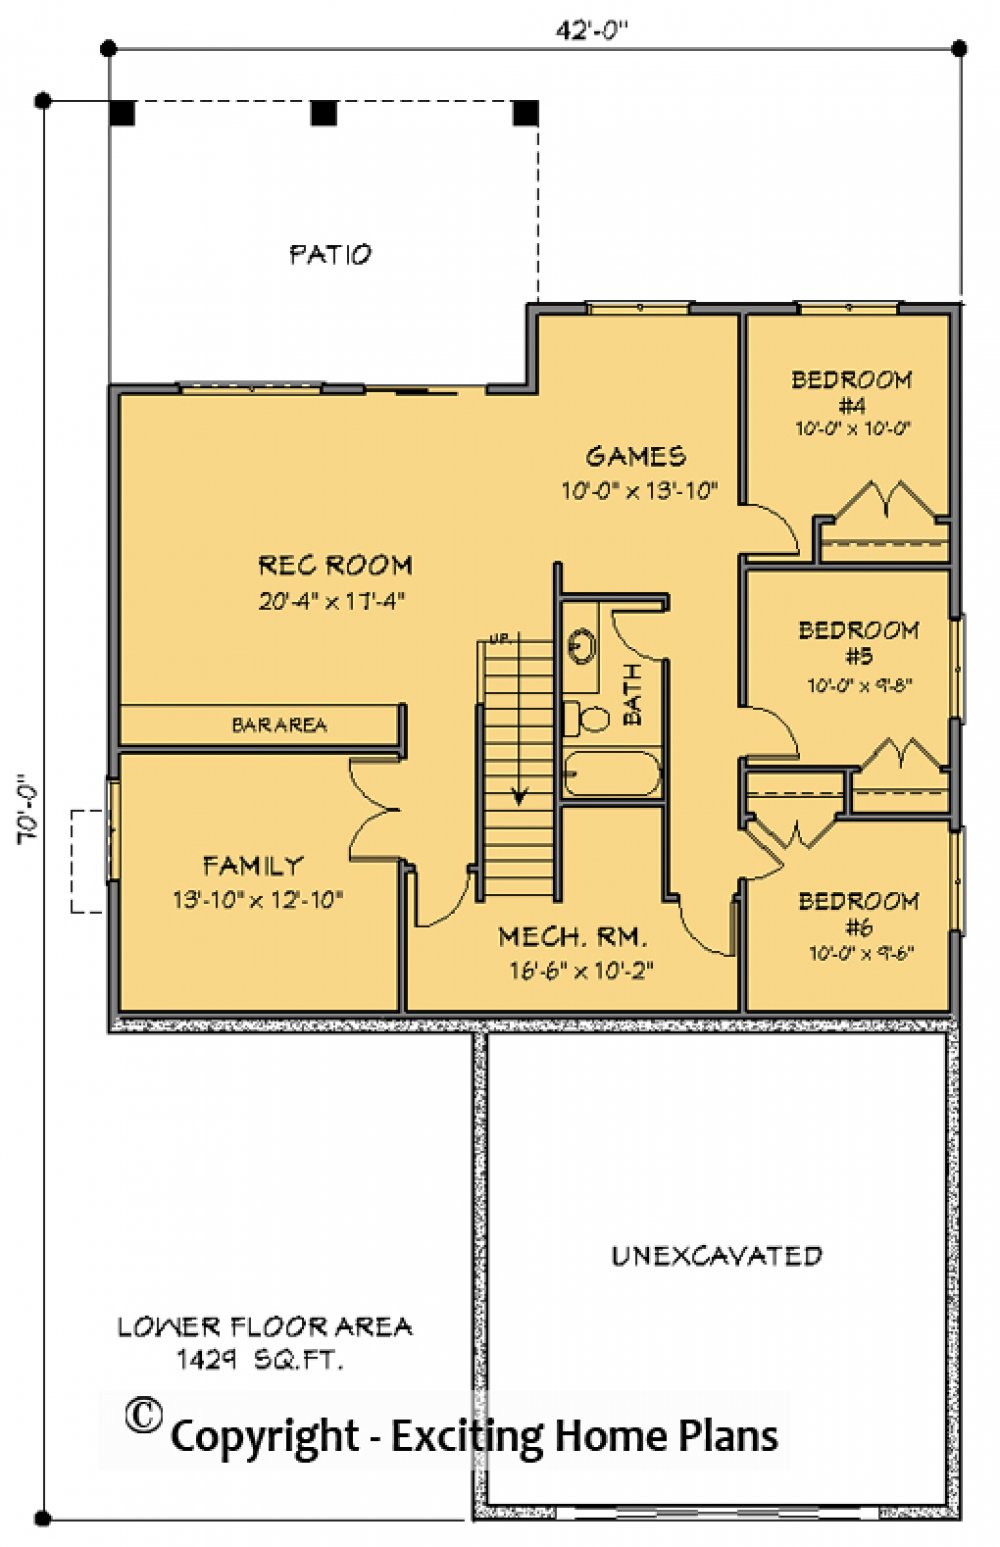 House Plan E1741-10 Lower Floor Plan